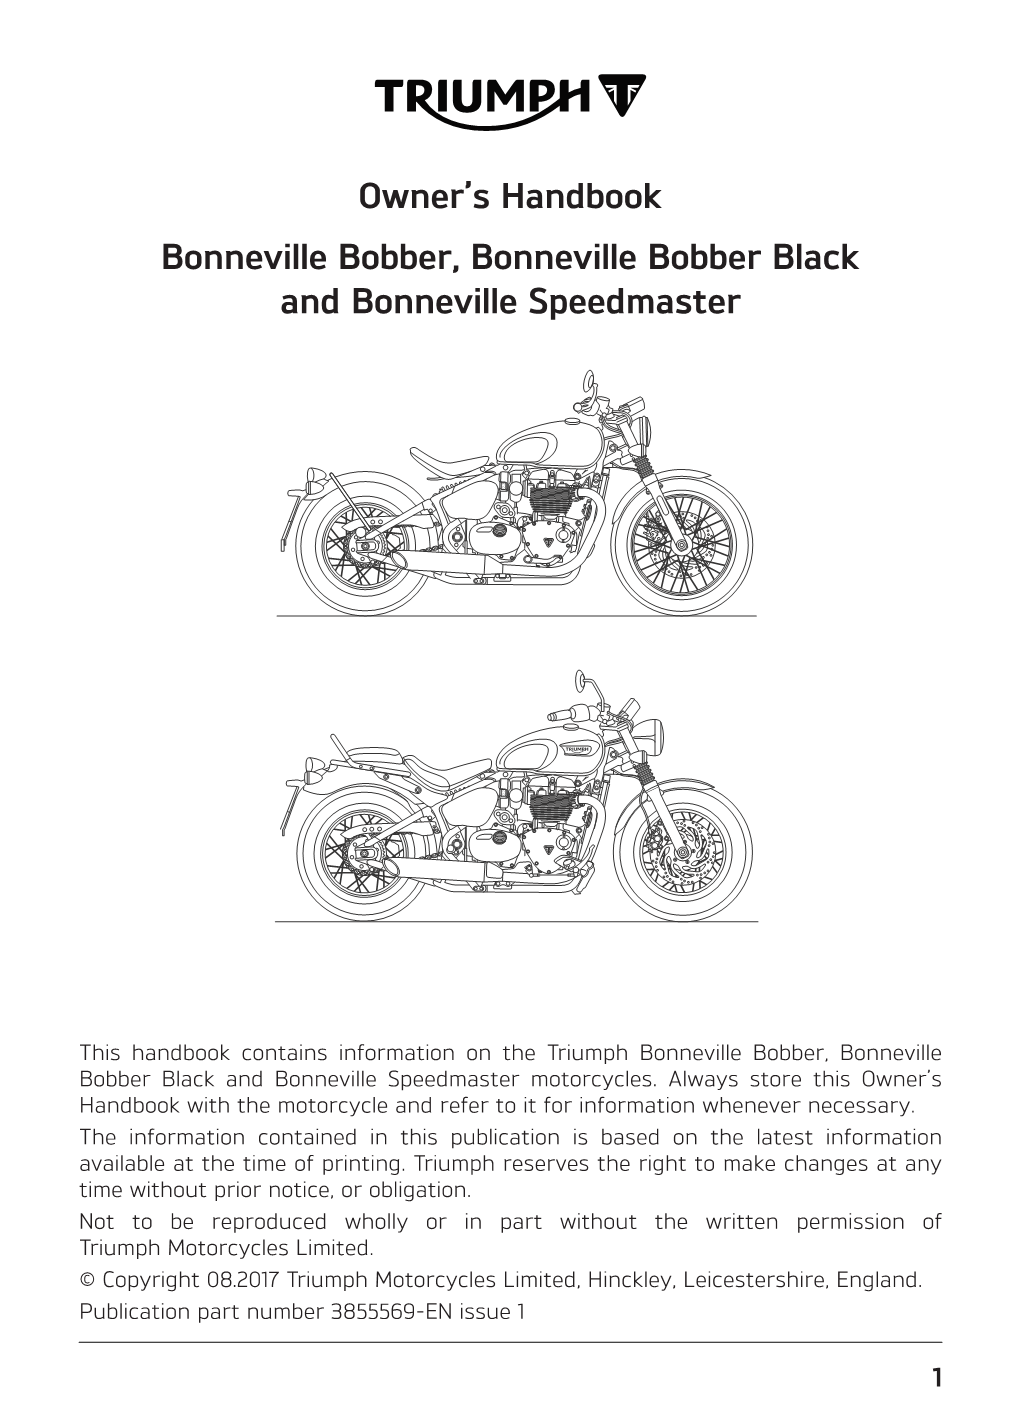 Bonneville Bobber, Bobber Black